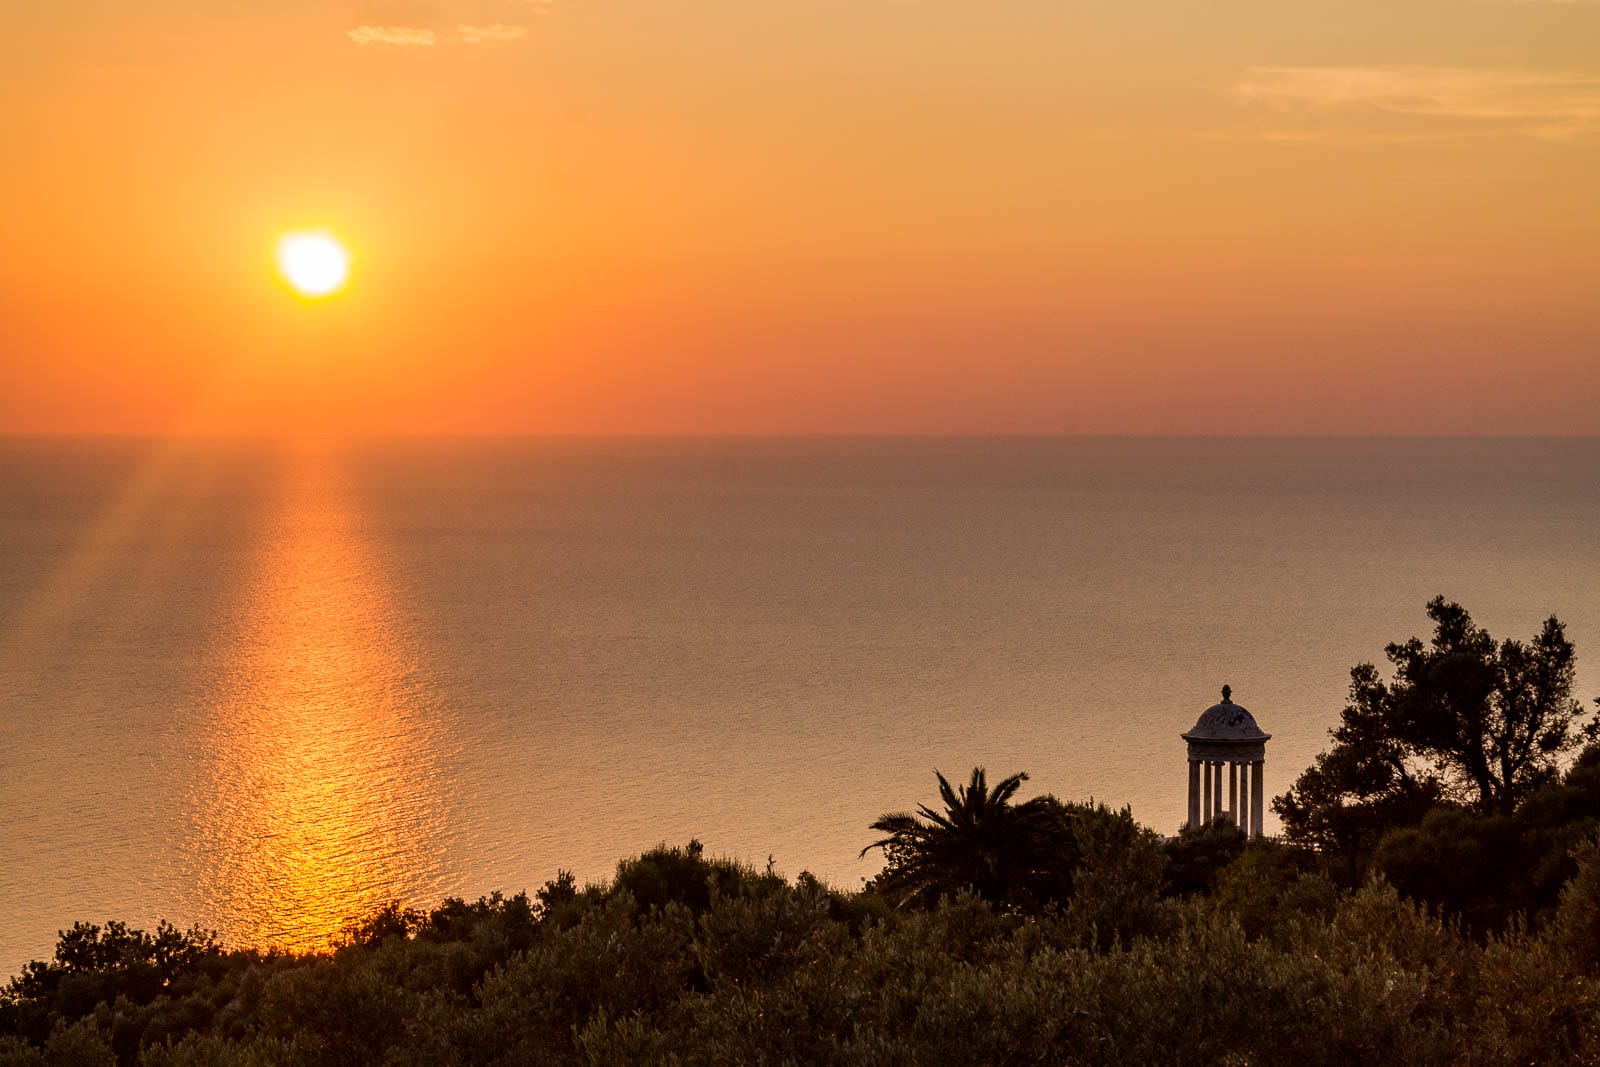 Sunset at Son Marroig in Mallorca